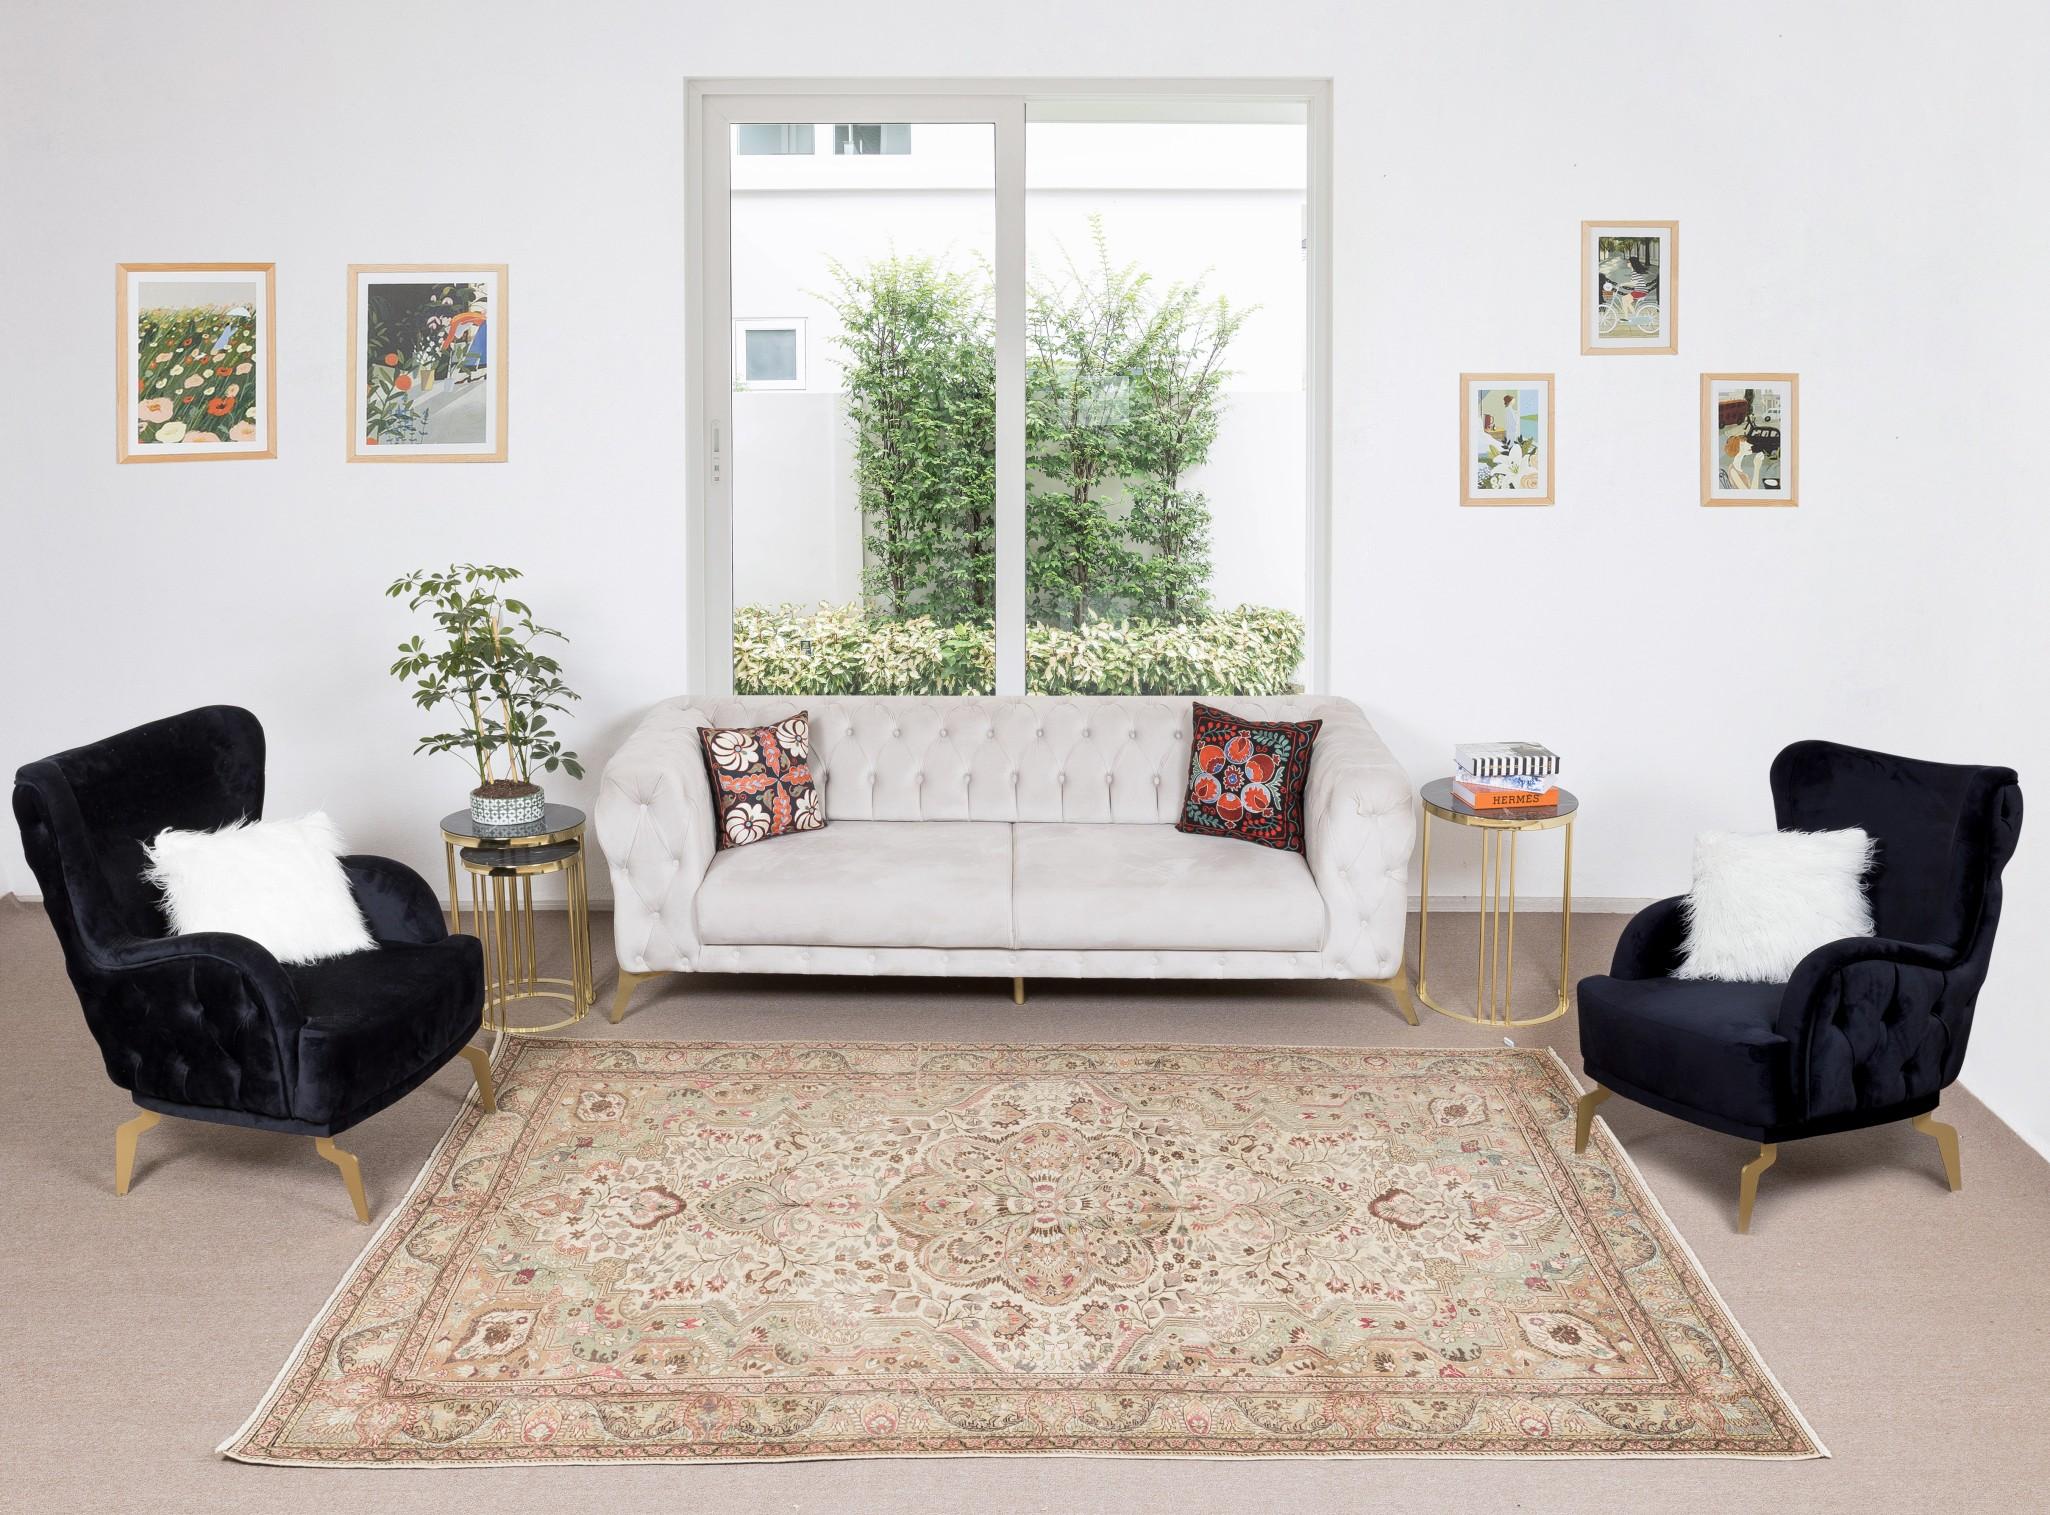 Unsere sonnenverblassten Teppiche sind allesamt einzigartige, handgeknüpfte, 50-70 Jahre alte Vintage-Stücke. Jeder von ihnen zeichnet sich durch eine einzigartige, handgefertigte Ästhetik aus, die aus der jahrhundertealten türkischen